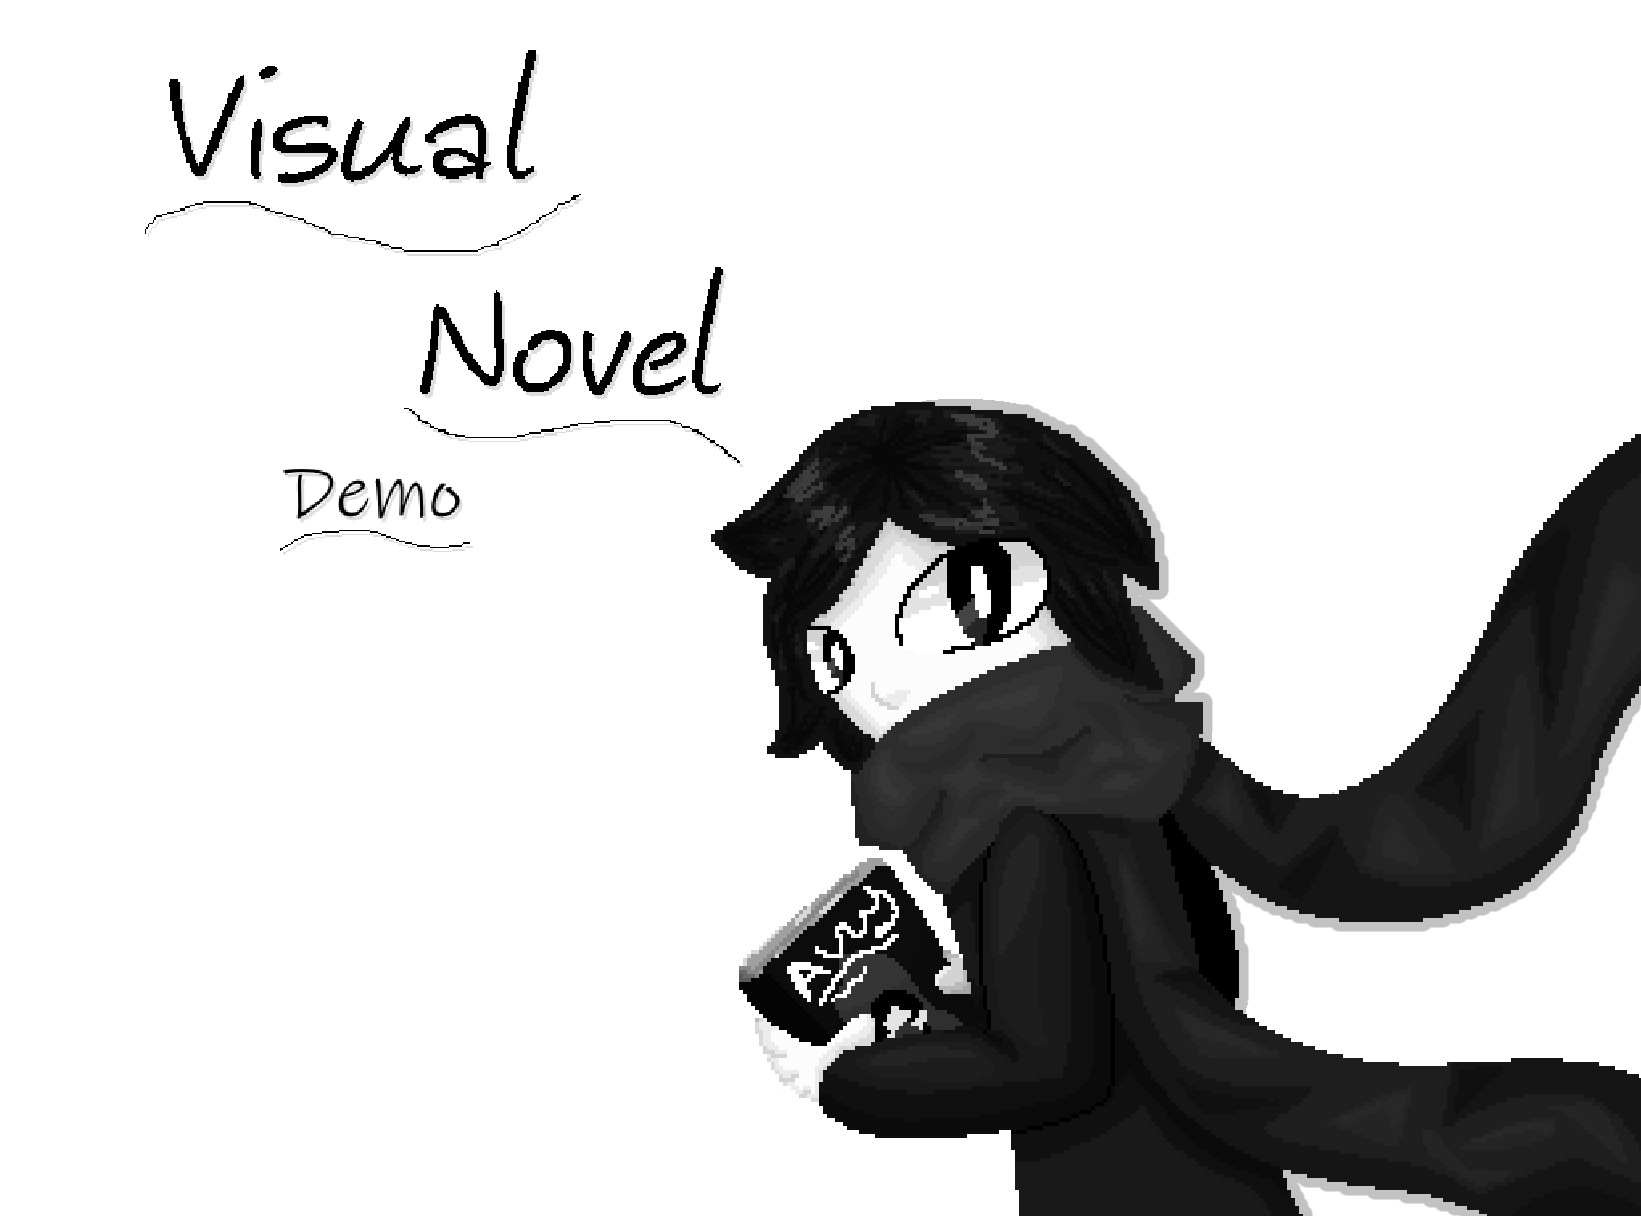 Visual Novel DEMO